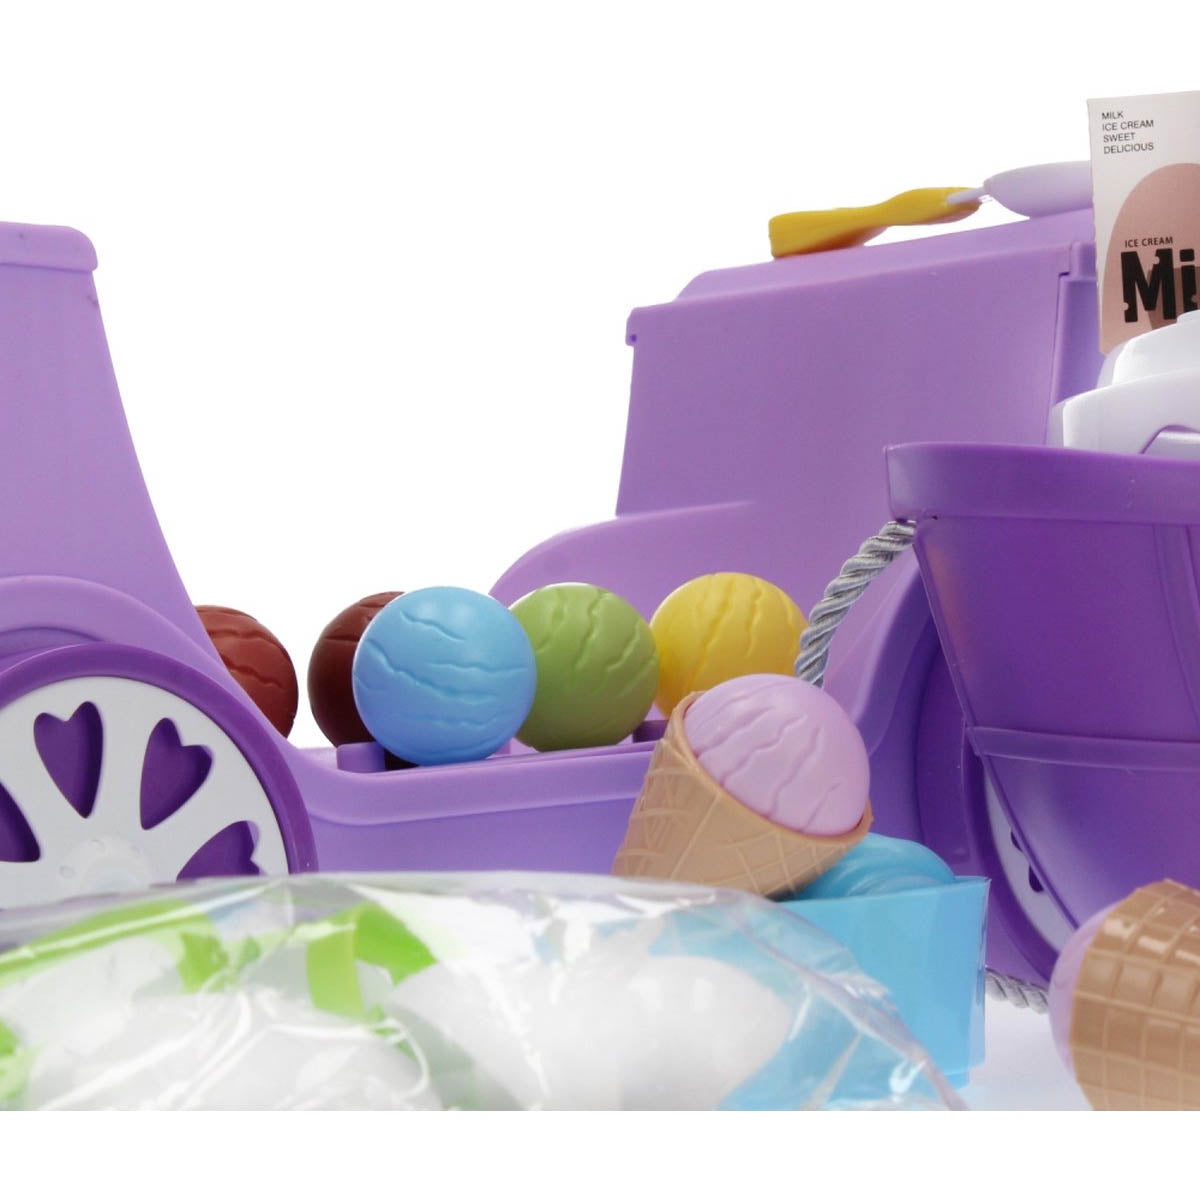 Ariko Spielzeugwagen Eisdielenwagen Shop 69 Teile - Softeis, italienisches Eis, Geschirr, Waffeln und vieles mehr - praktischer Koffer zum Mitnehmen mit Rollen